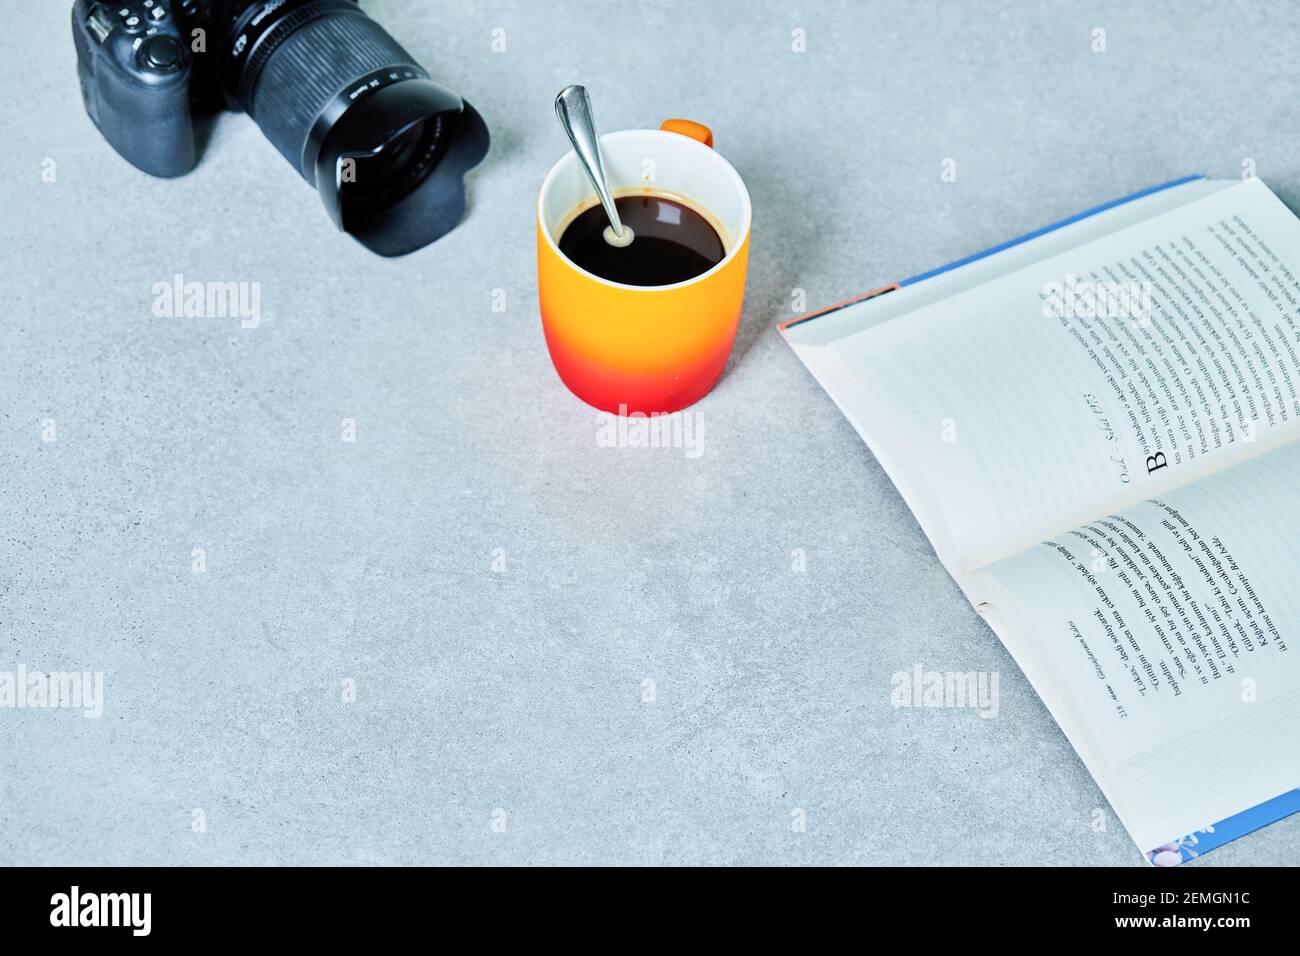 Apri il libro, la macchina fotografica e la tazza da caffè con il cucchiaio sul tavolo grigio Foto Stock